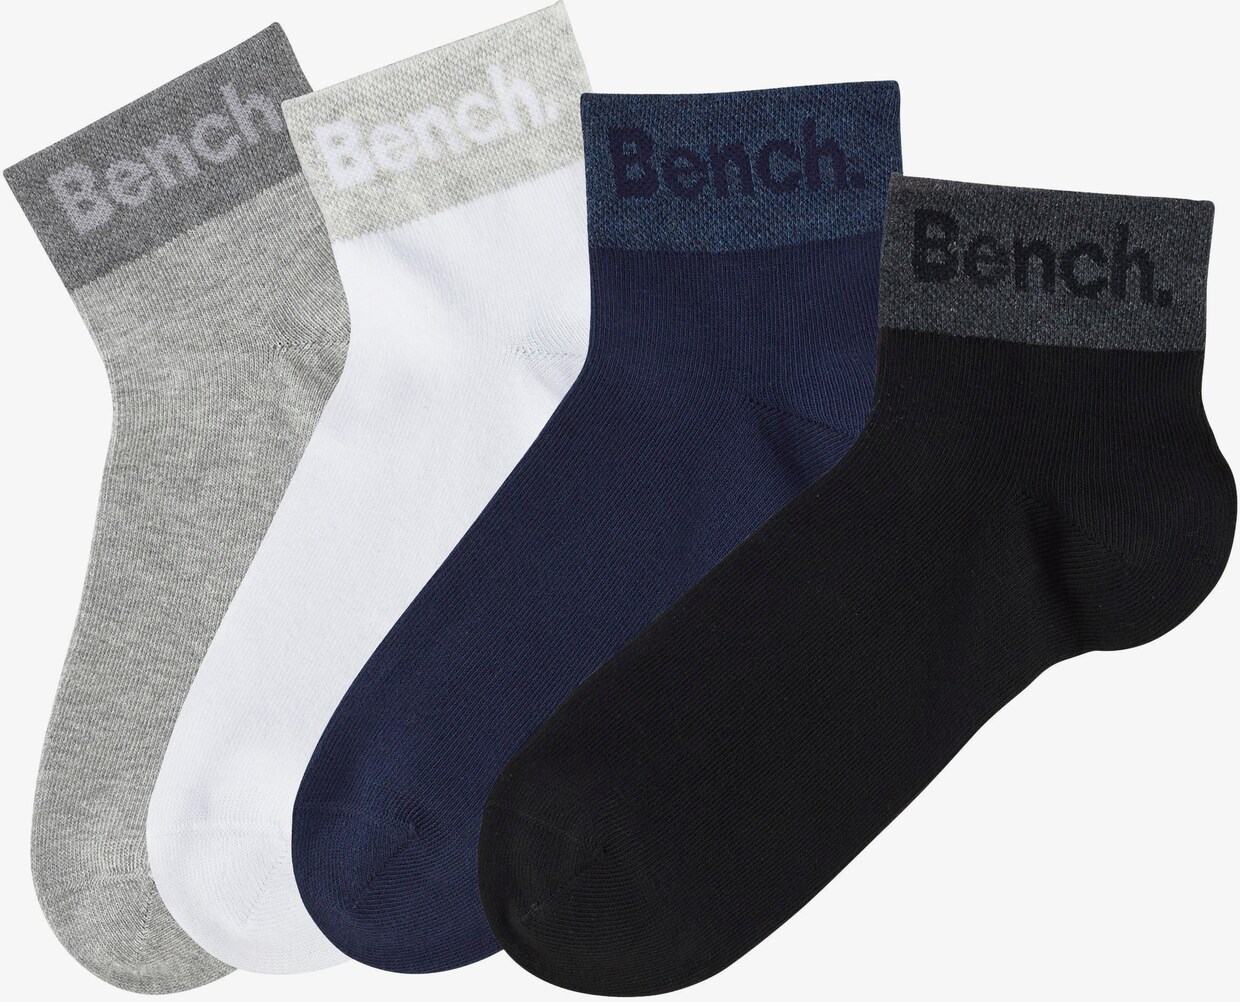 Bench. Socquettes - 2x noir, 2x blanc, 2x gris clair chiné, 2x bleu